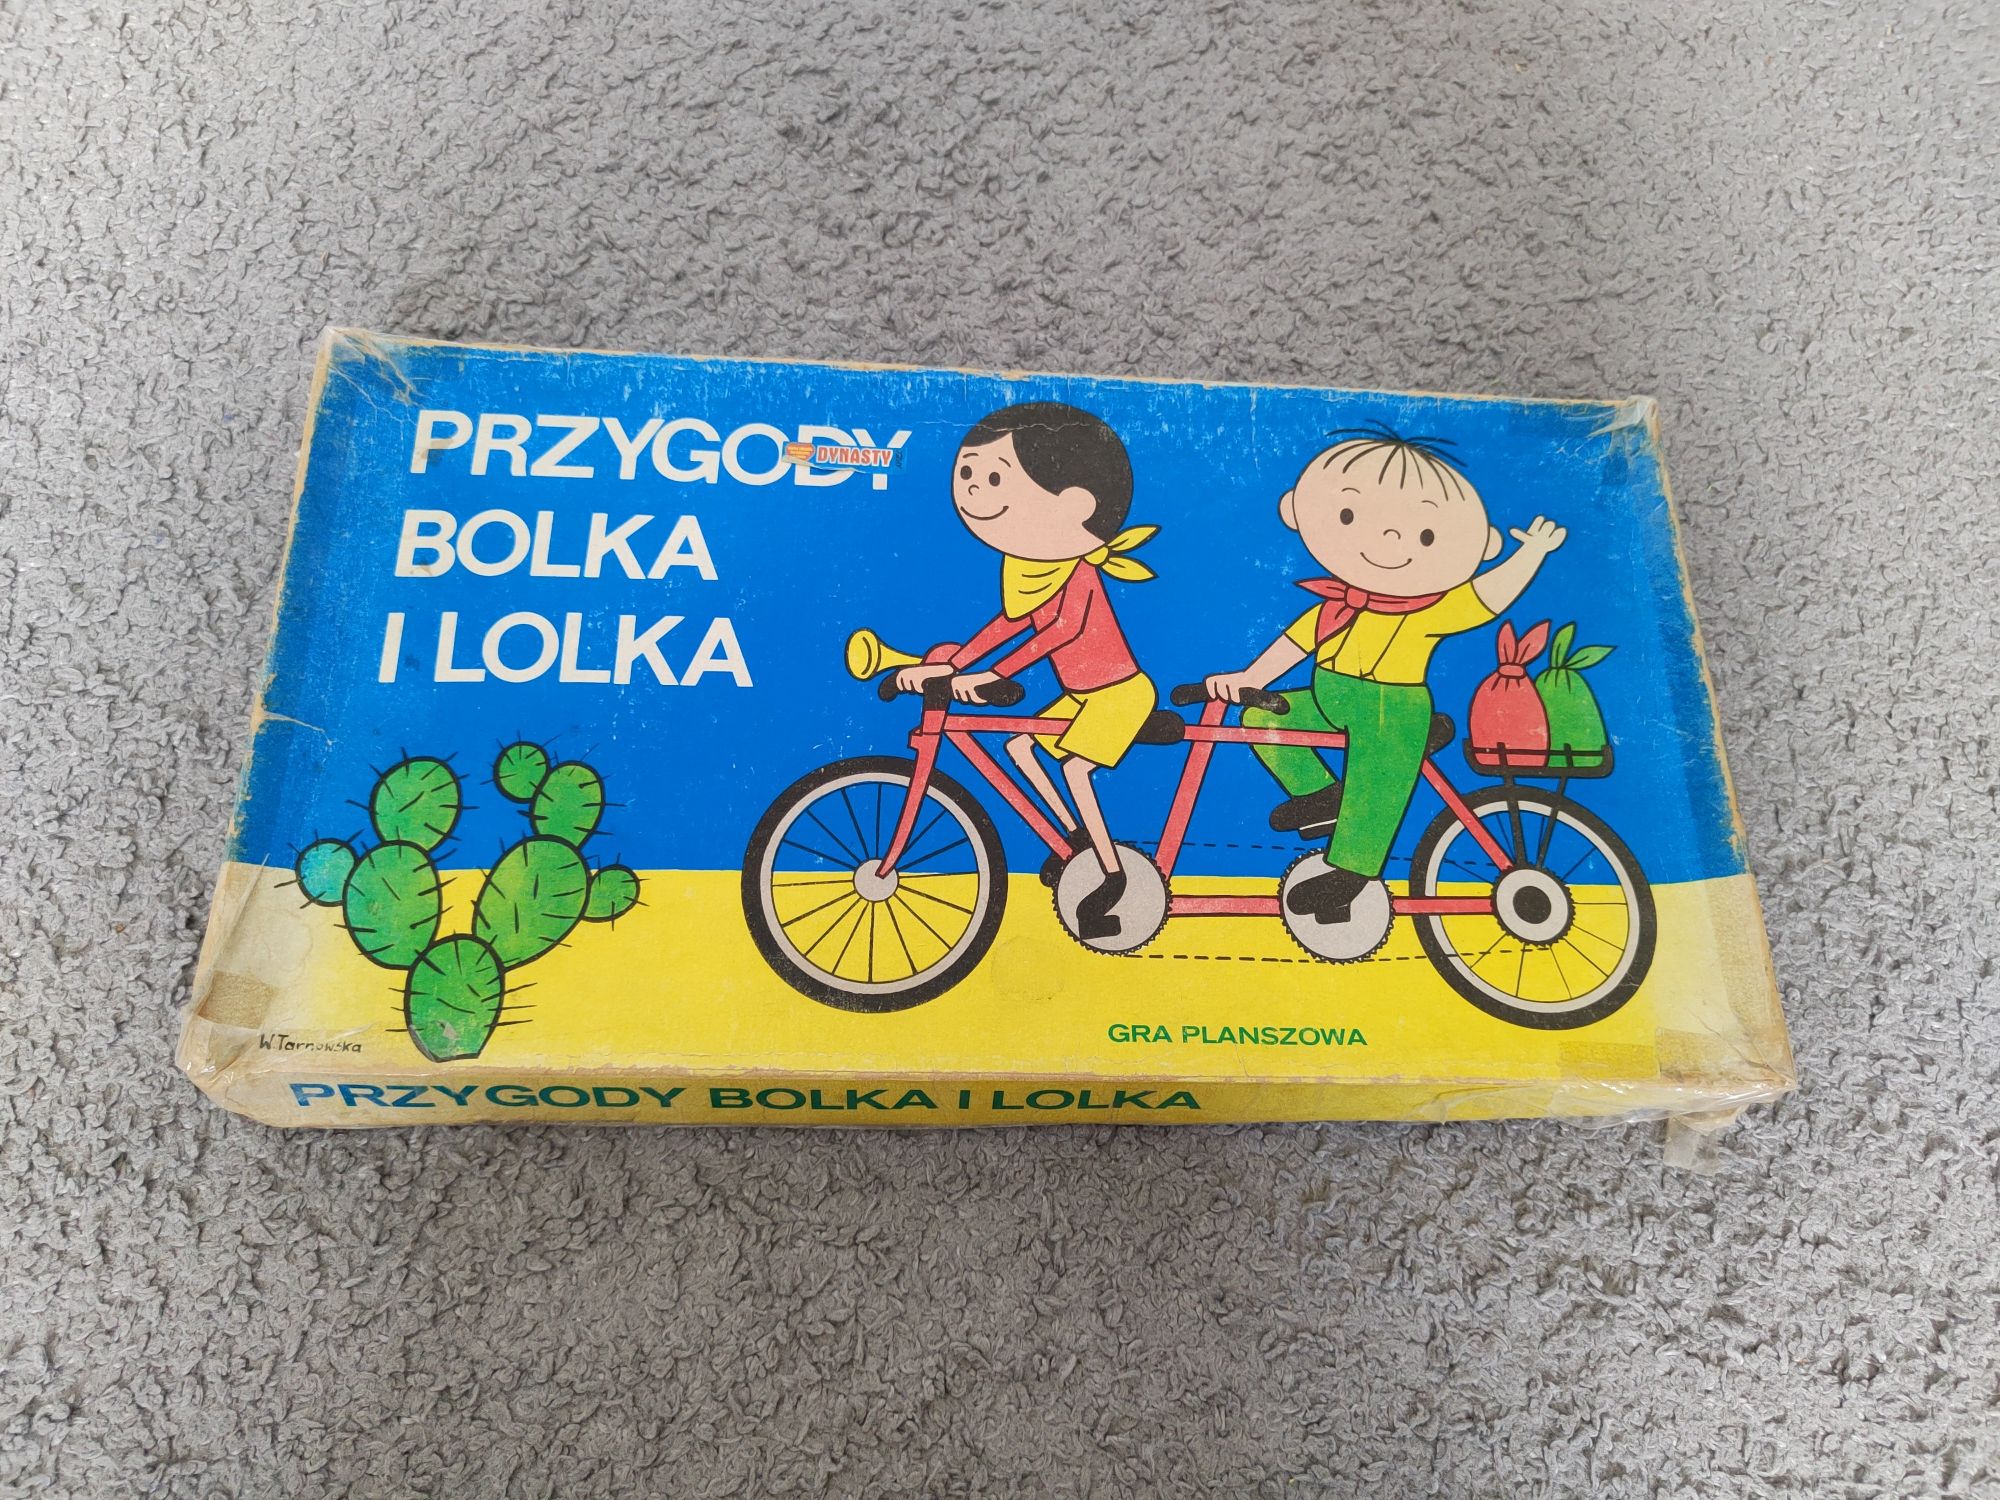 Gra planszowa Przygody Bolka i Lolka PRL, vintage